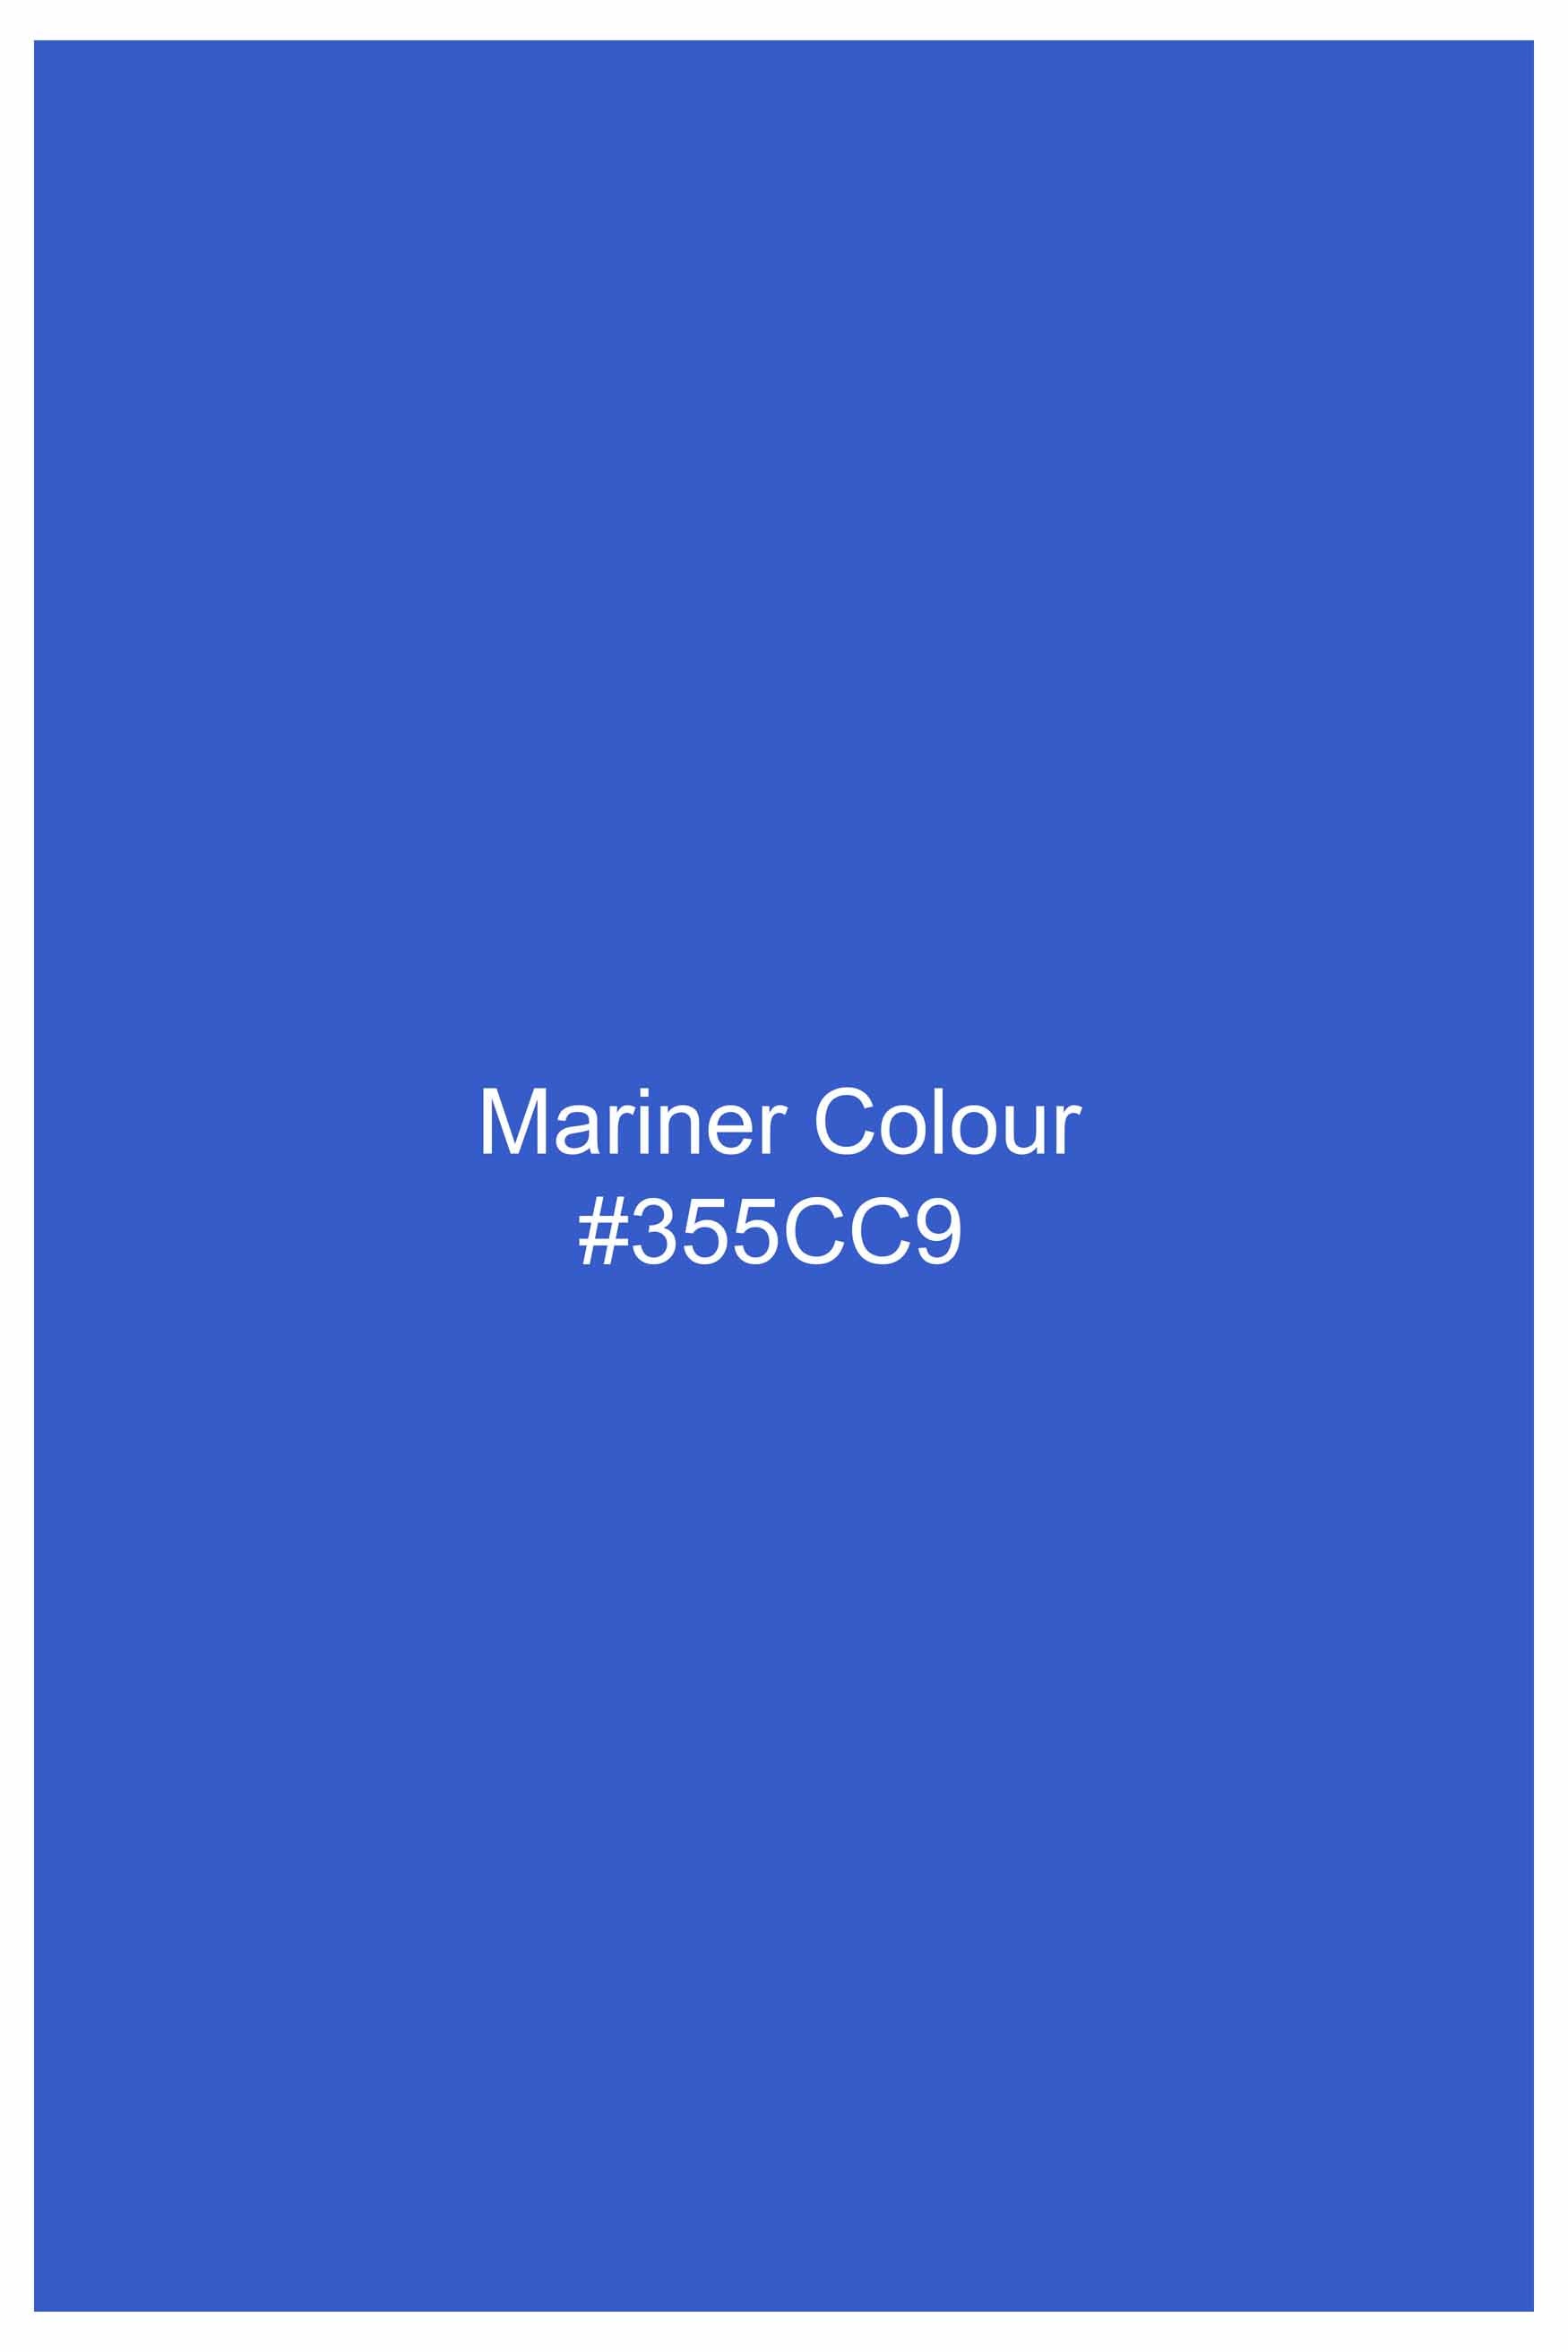 Mariner Blue Flannel Designer Overshirt 11456-OS-FP-38, 11456-OS-FP-H-38, 11456-OS-FP-39, 11456-OS-FP-H-39, 11456-OS-FP-40, 11456-OS-FP-H-40, 11456-OS-FP-42, 11456-OS-FP-H-42, 11456-OS-FP-44, 11456-OS-FP-H-44, 11456-OS-FP-46, 11456-OS-FP-H-46, 11456-OS-FP-48, 11456-OS-FP-H-48, 11456-OS-FP-50, 11456-OS-FP-H-50, 11456-OS-FP-52, 11456-OS-FP-H-52